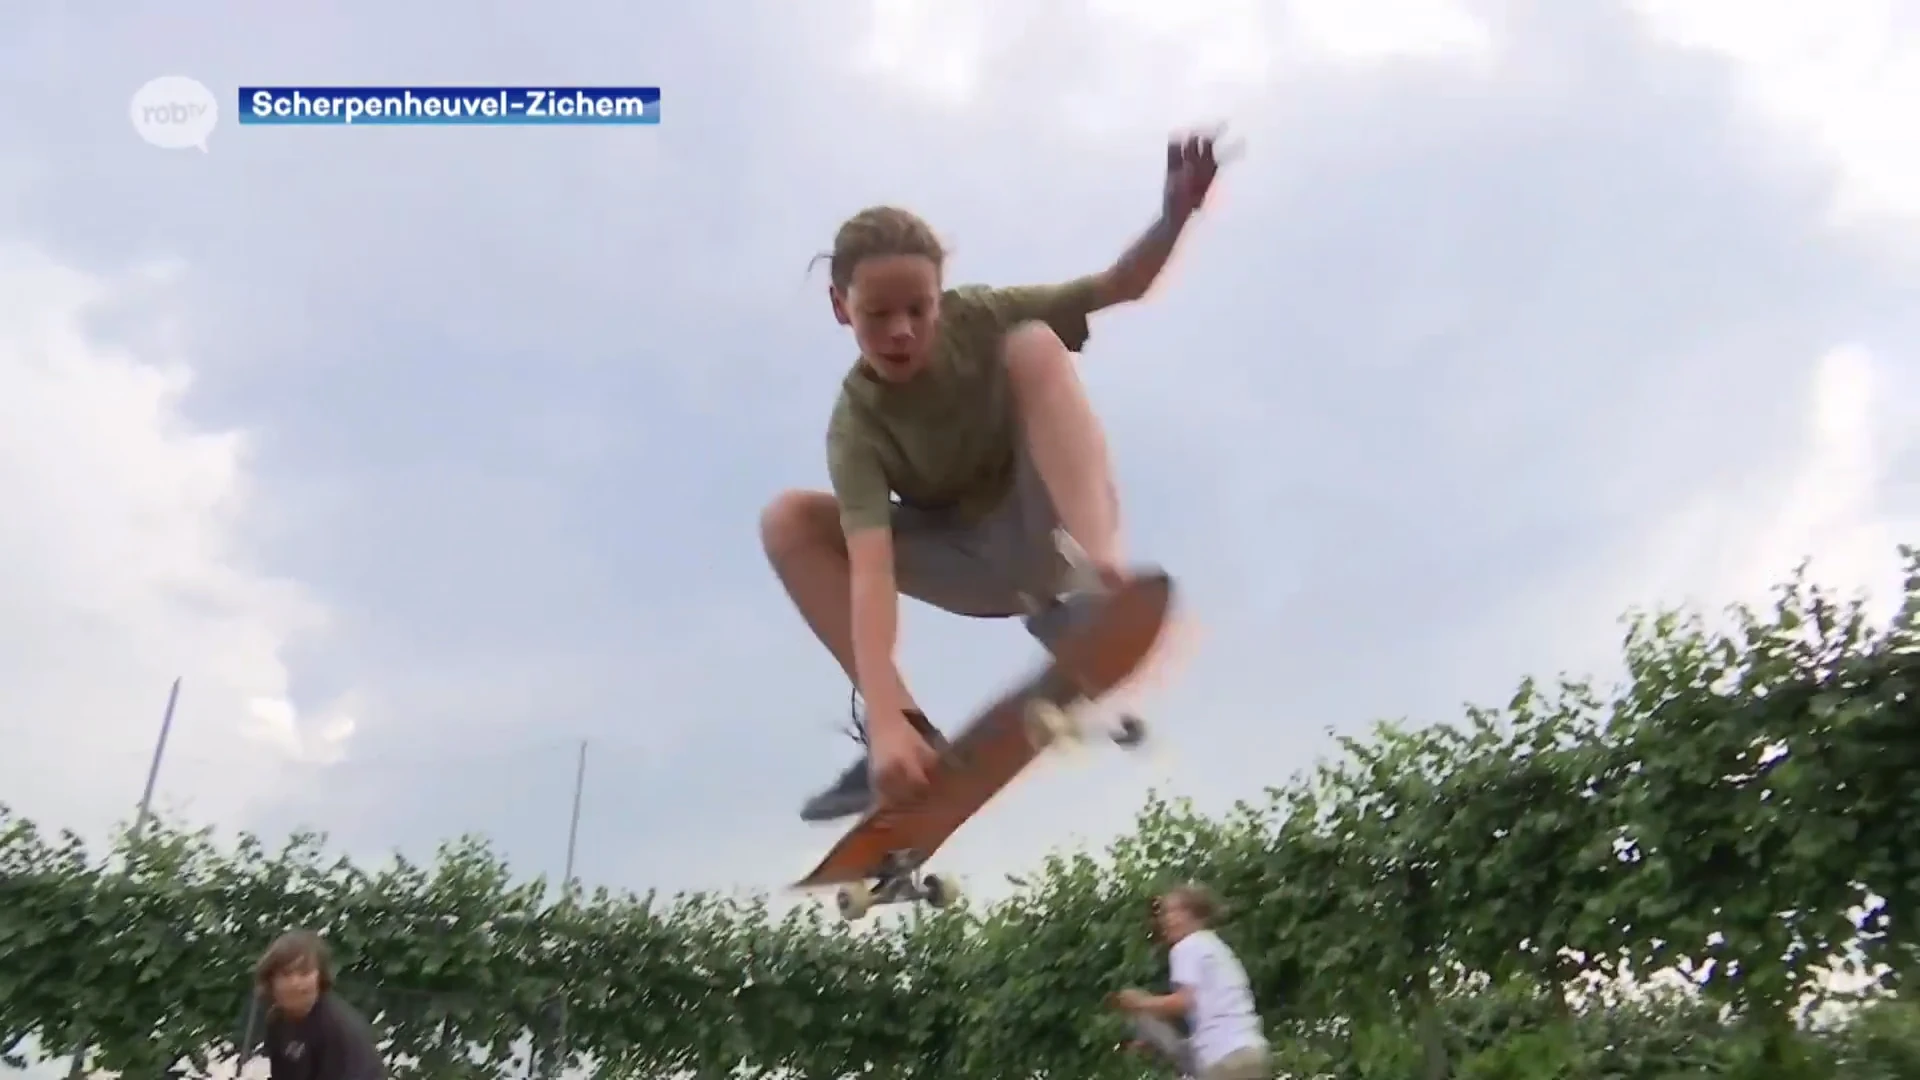 Skaters testen nieuw, mobiel skatepark uit in Scherpenheuvel-Zichem: "Makkelijk te verplaatsen naar deelgemeenten"